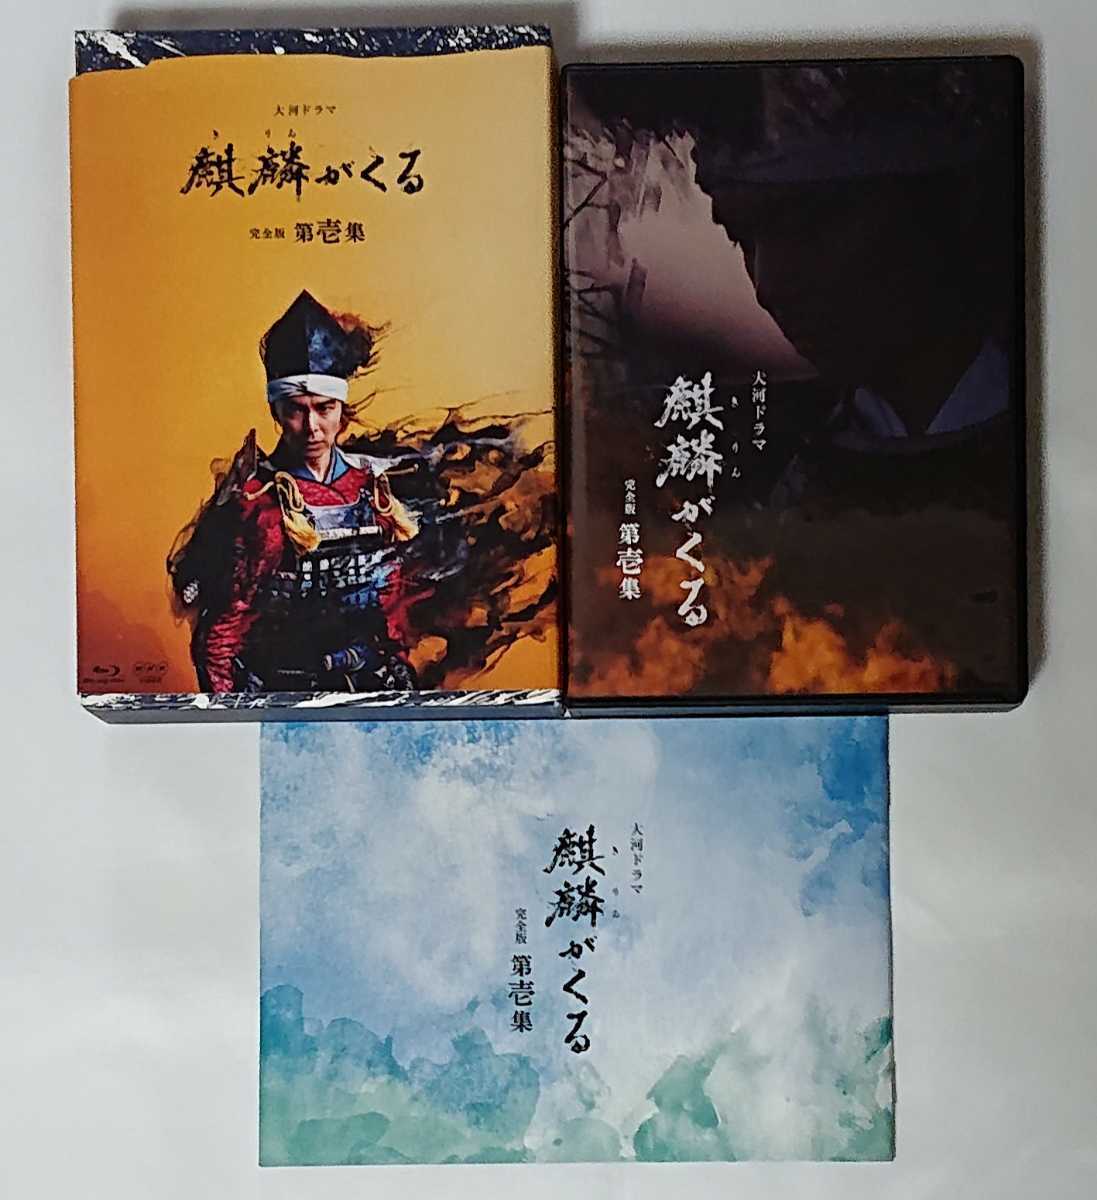 NHK 大河ドラマ 麒麟がくる 完全版 第壱集 ブルーレイBOX〈5枚組〉Blu